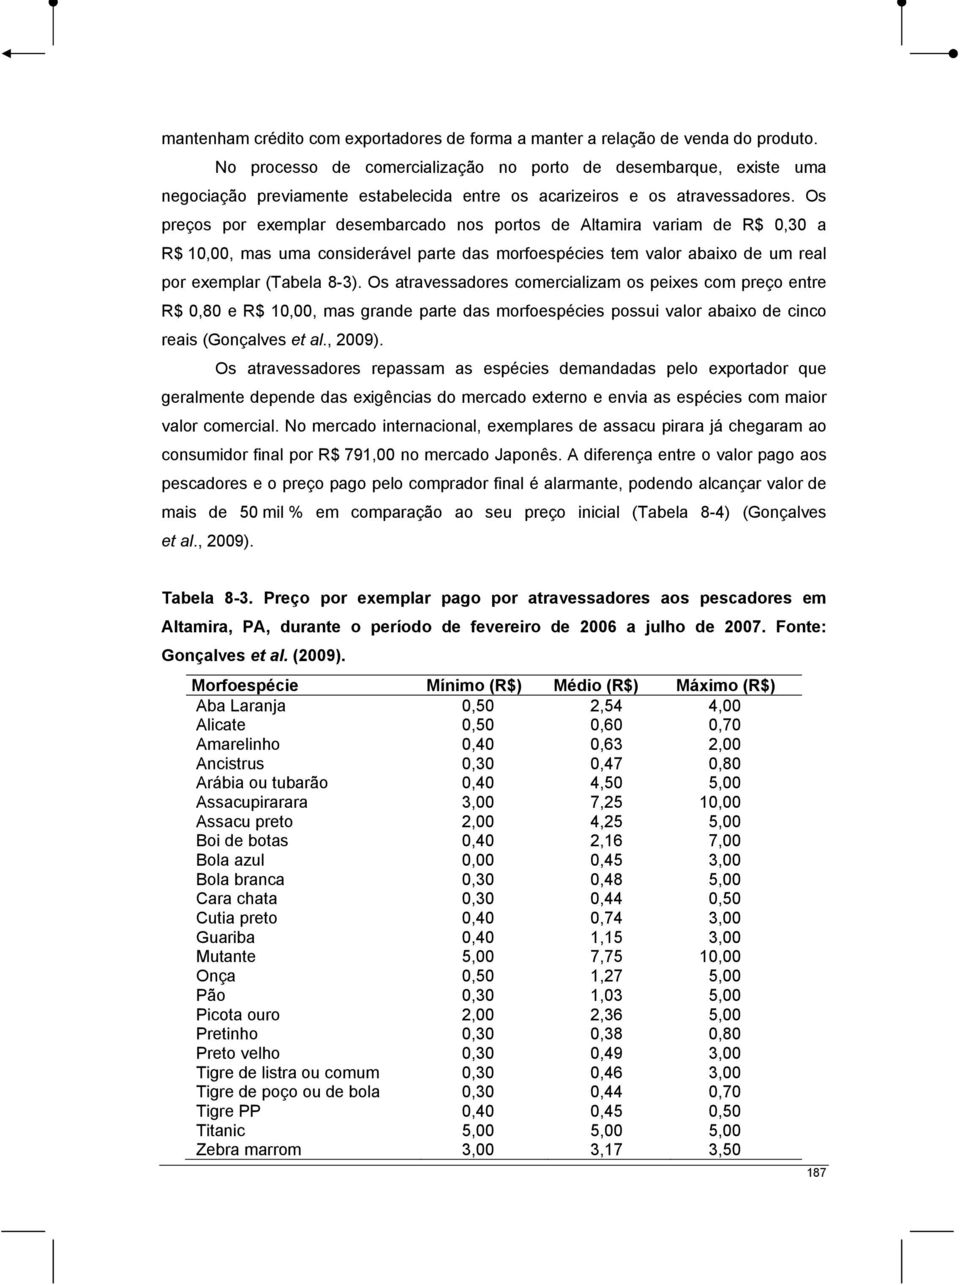 Os preços por exemplar desembarcado nos portos de Altamira variam de R$ 0,30 a R$ 10,00, mas uma considerável parte das morfoespécies tem valor abaixo de um real por exemplar (Tabela 8-3).